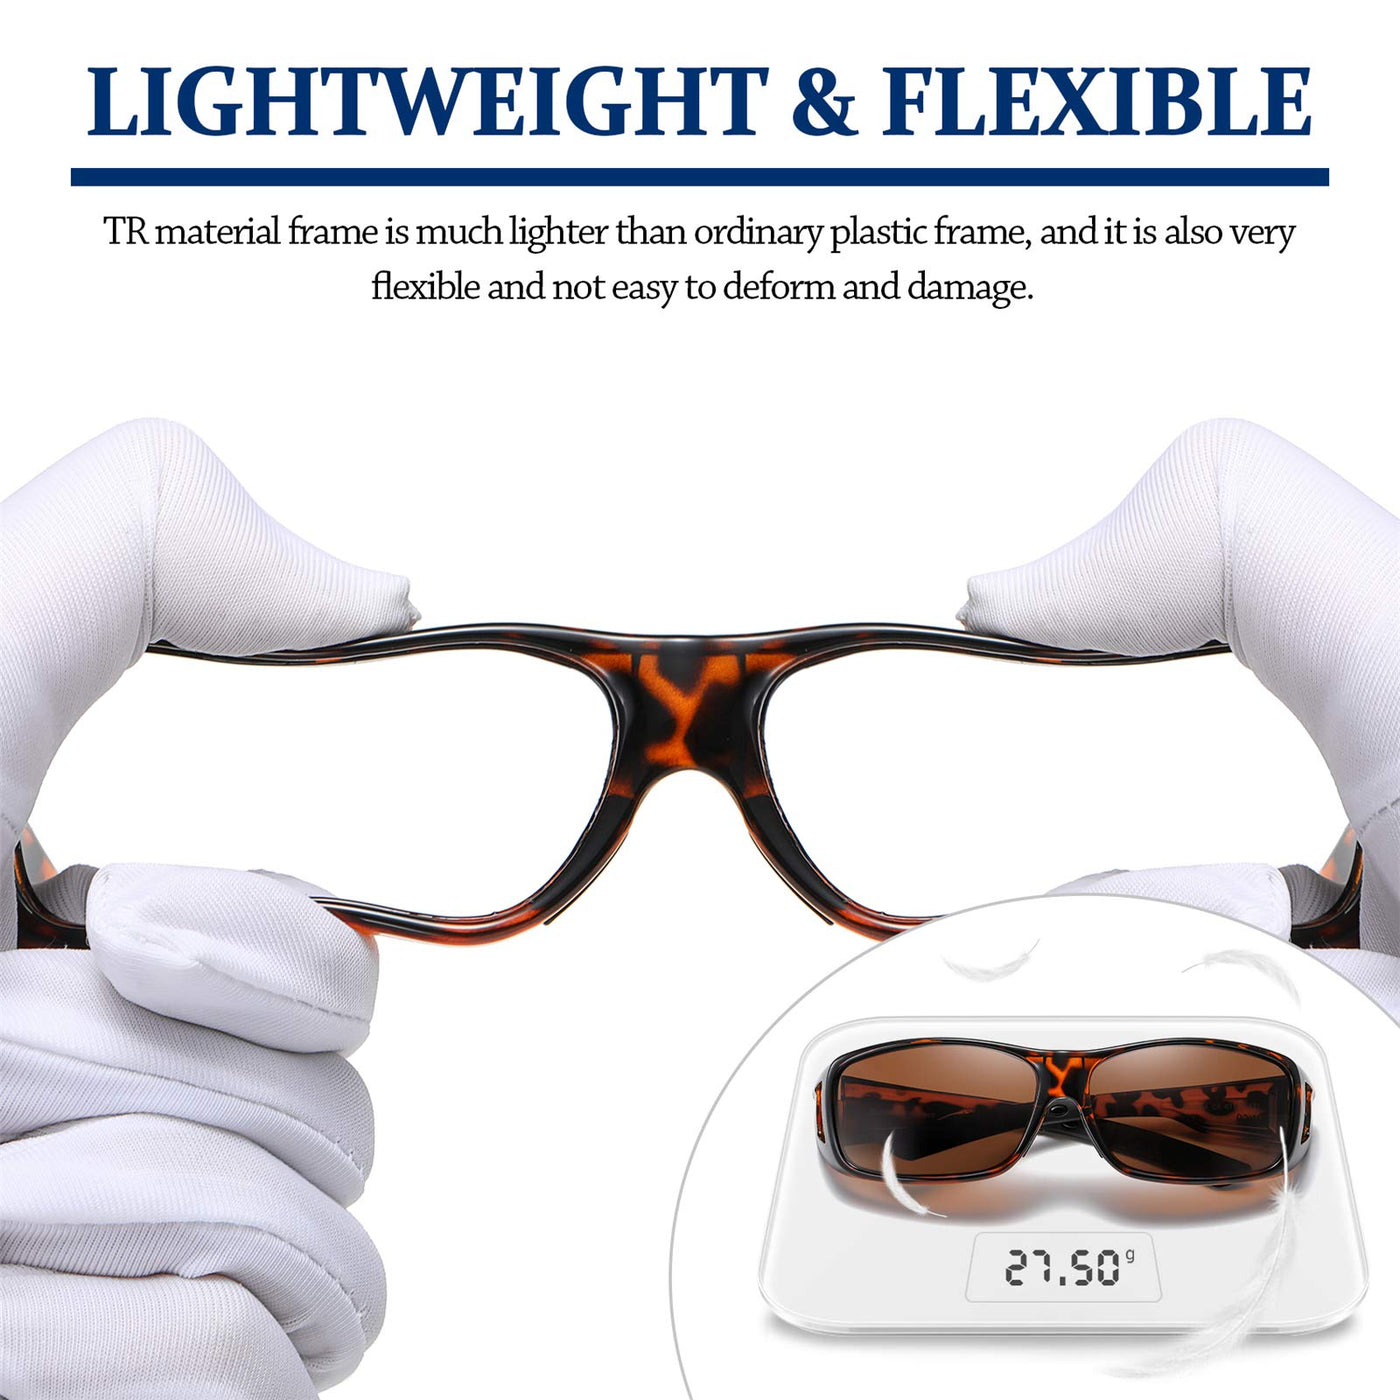 DUCO Men's Wraparound Fitover Polarizd Wear Over Sunglasses 8953